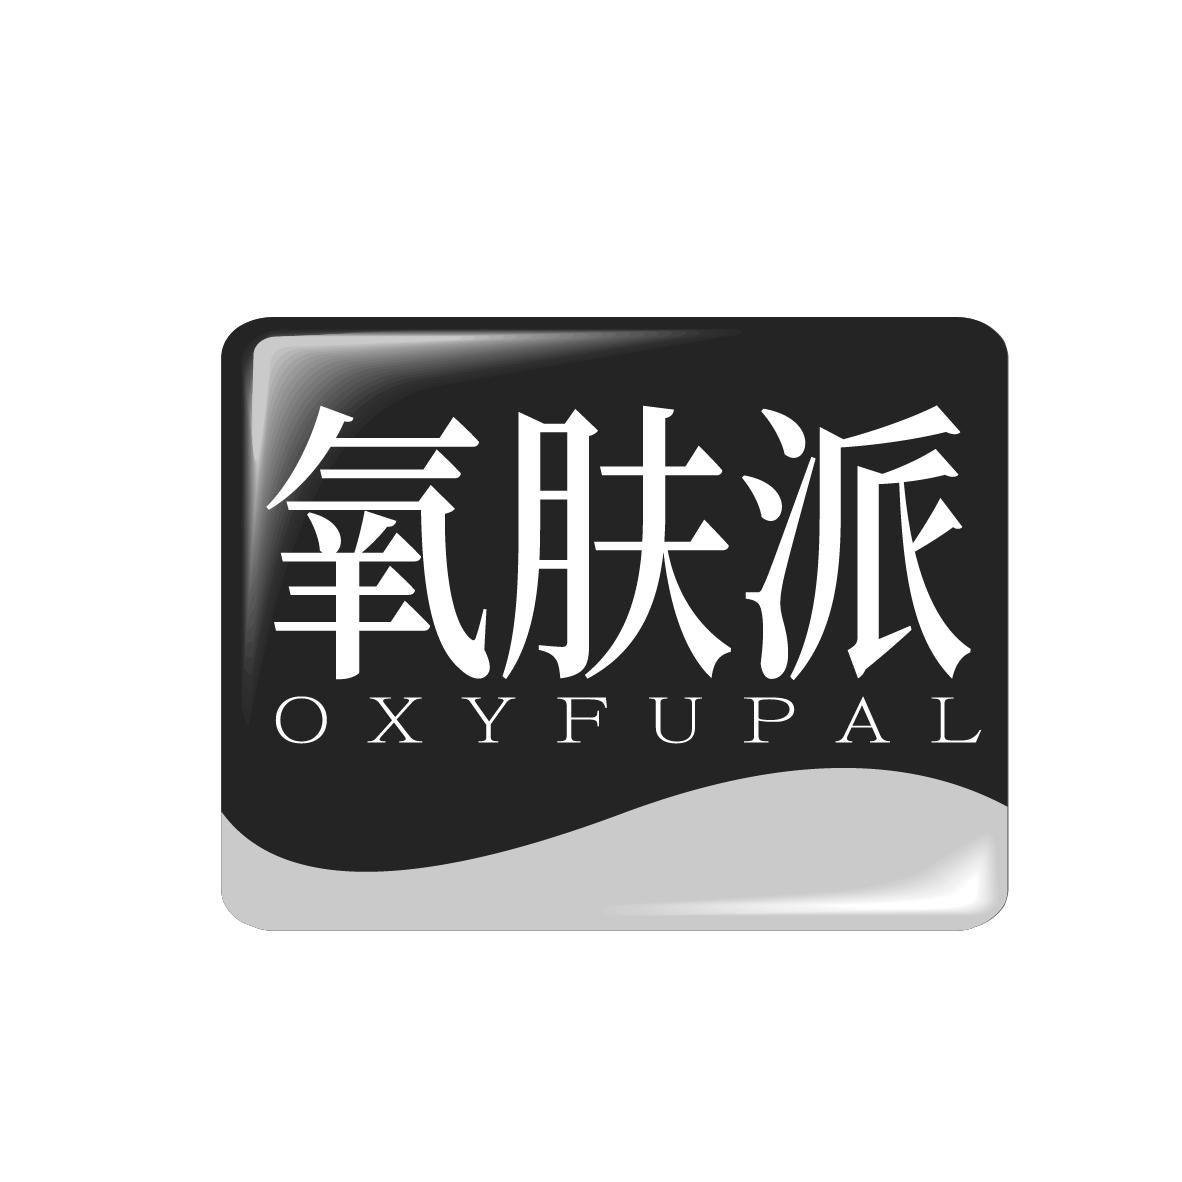  OXYFUPAL